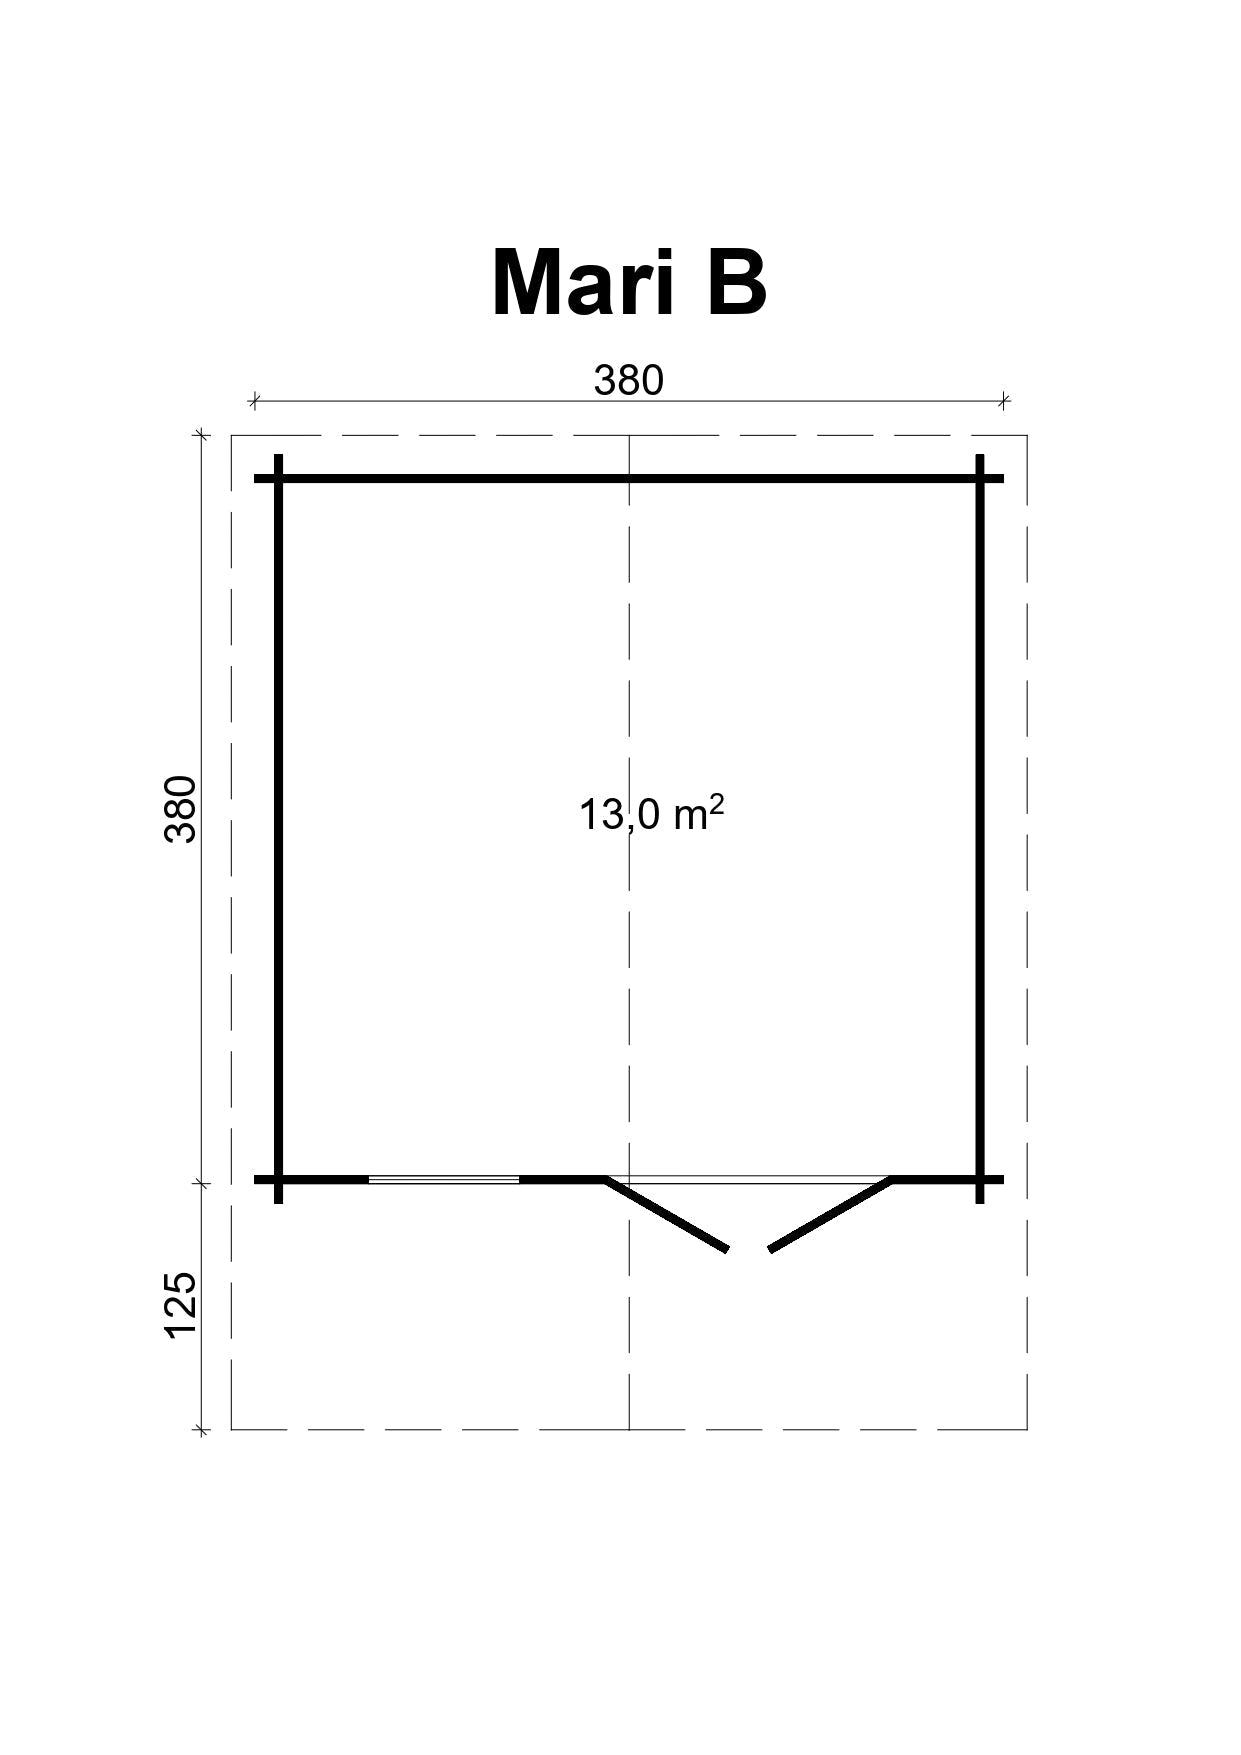 MARI-B 3.8x3.8m Log Cabin Plan